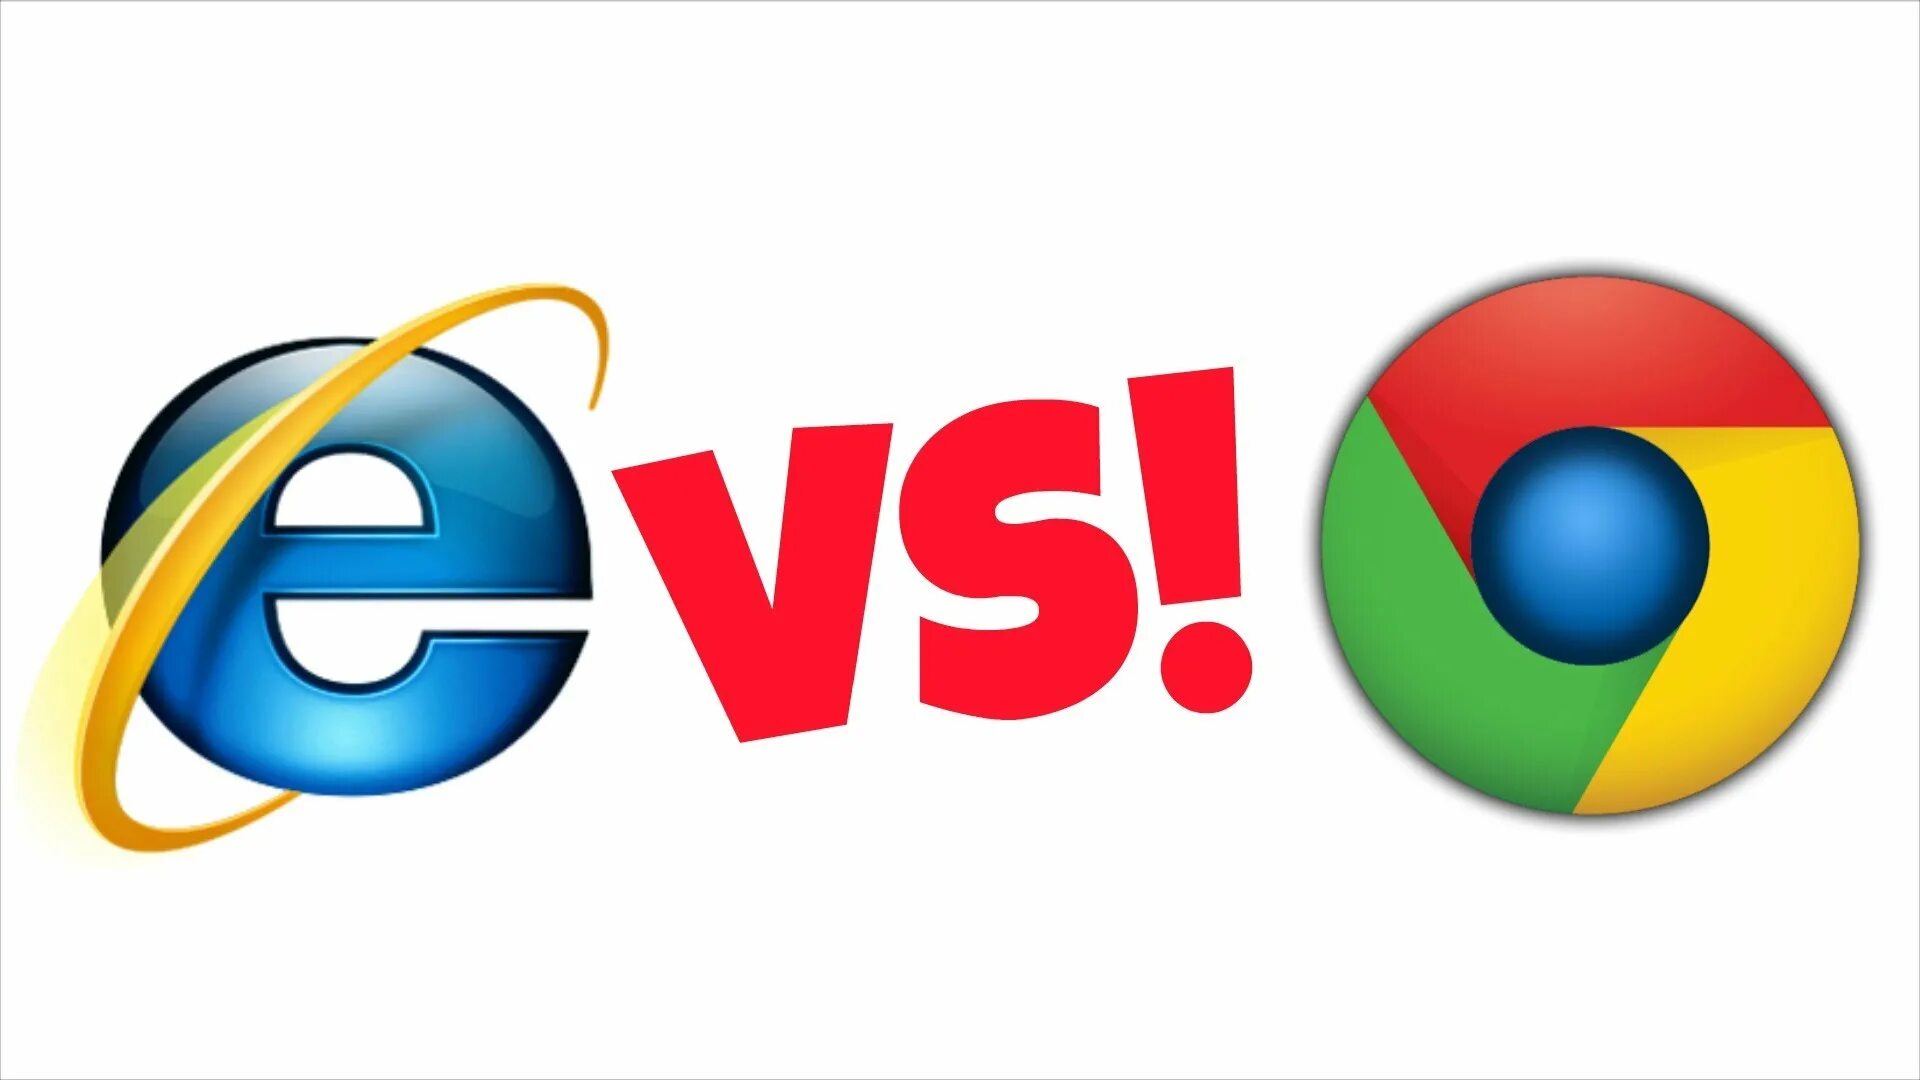 Вместо интернет эксплорер. Internet Explorer. Internet Explorer картинки. Internet Explorer 10. Internet Explorer обои.